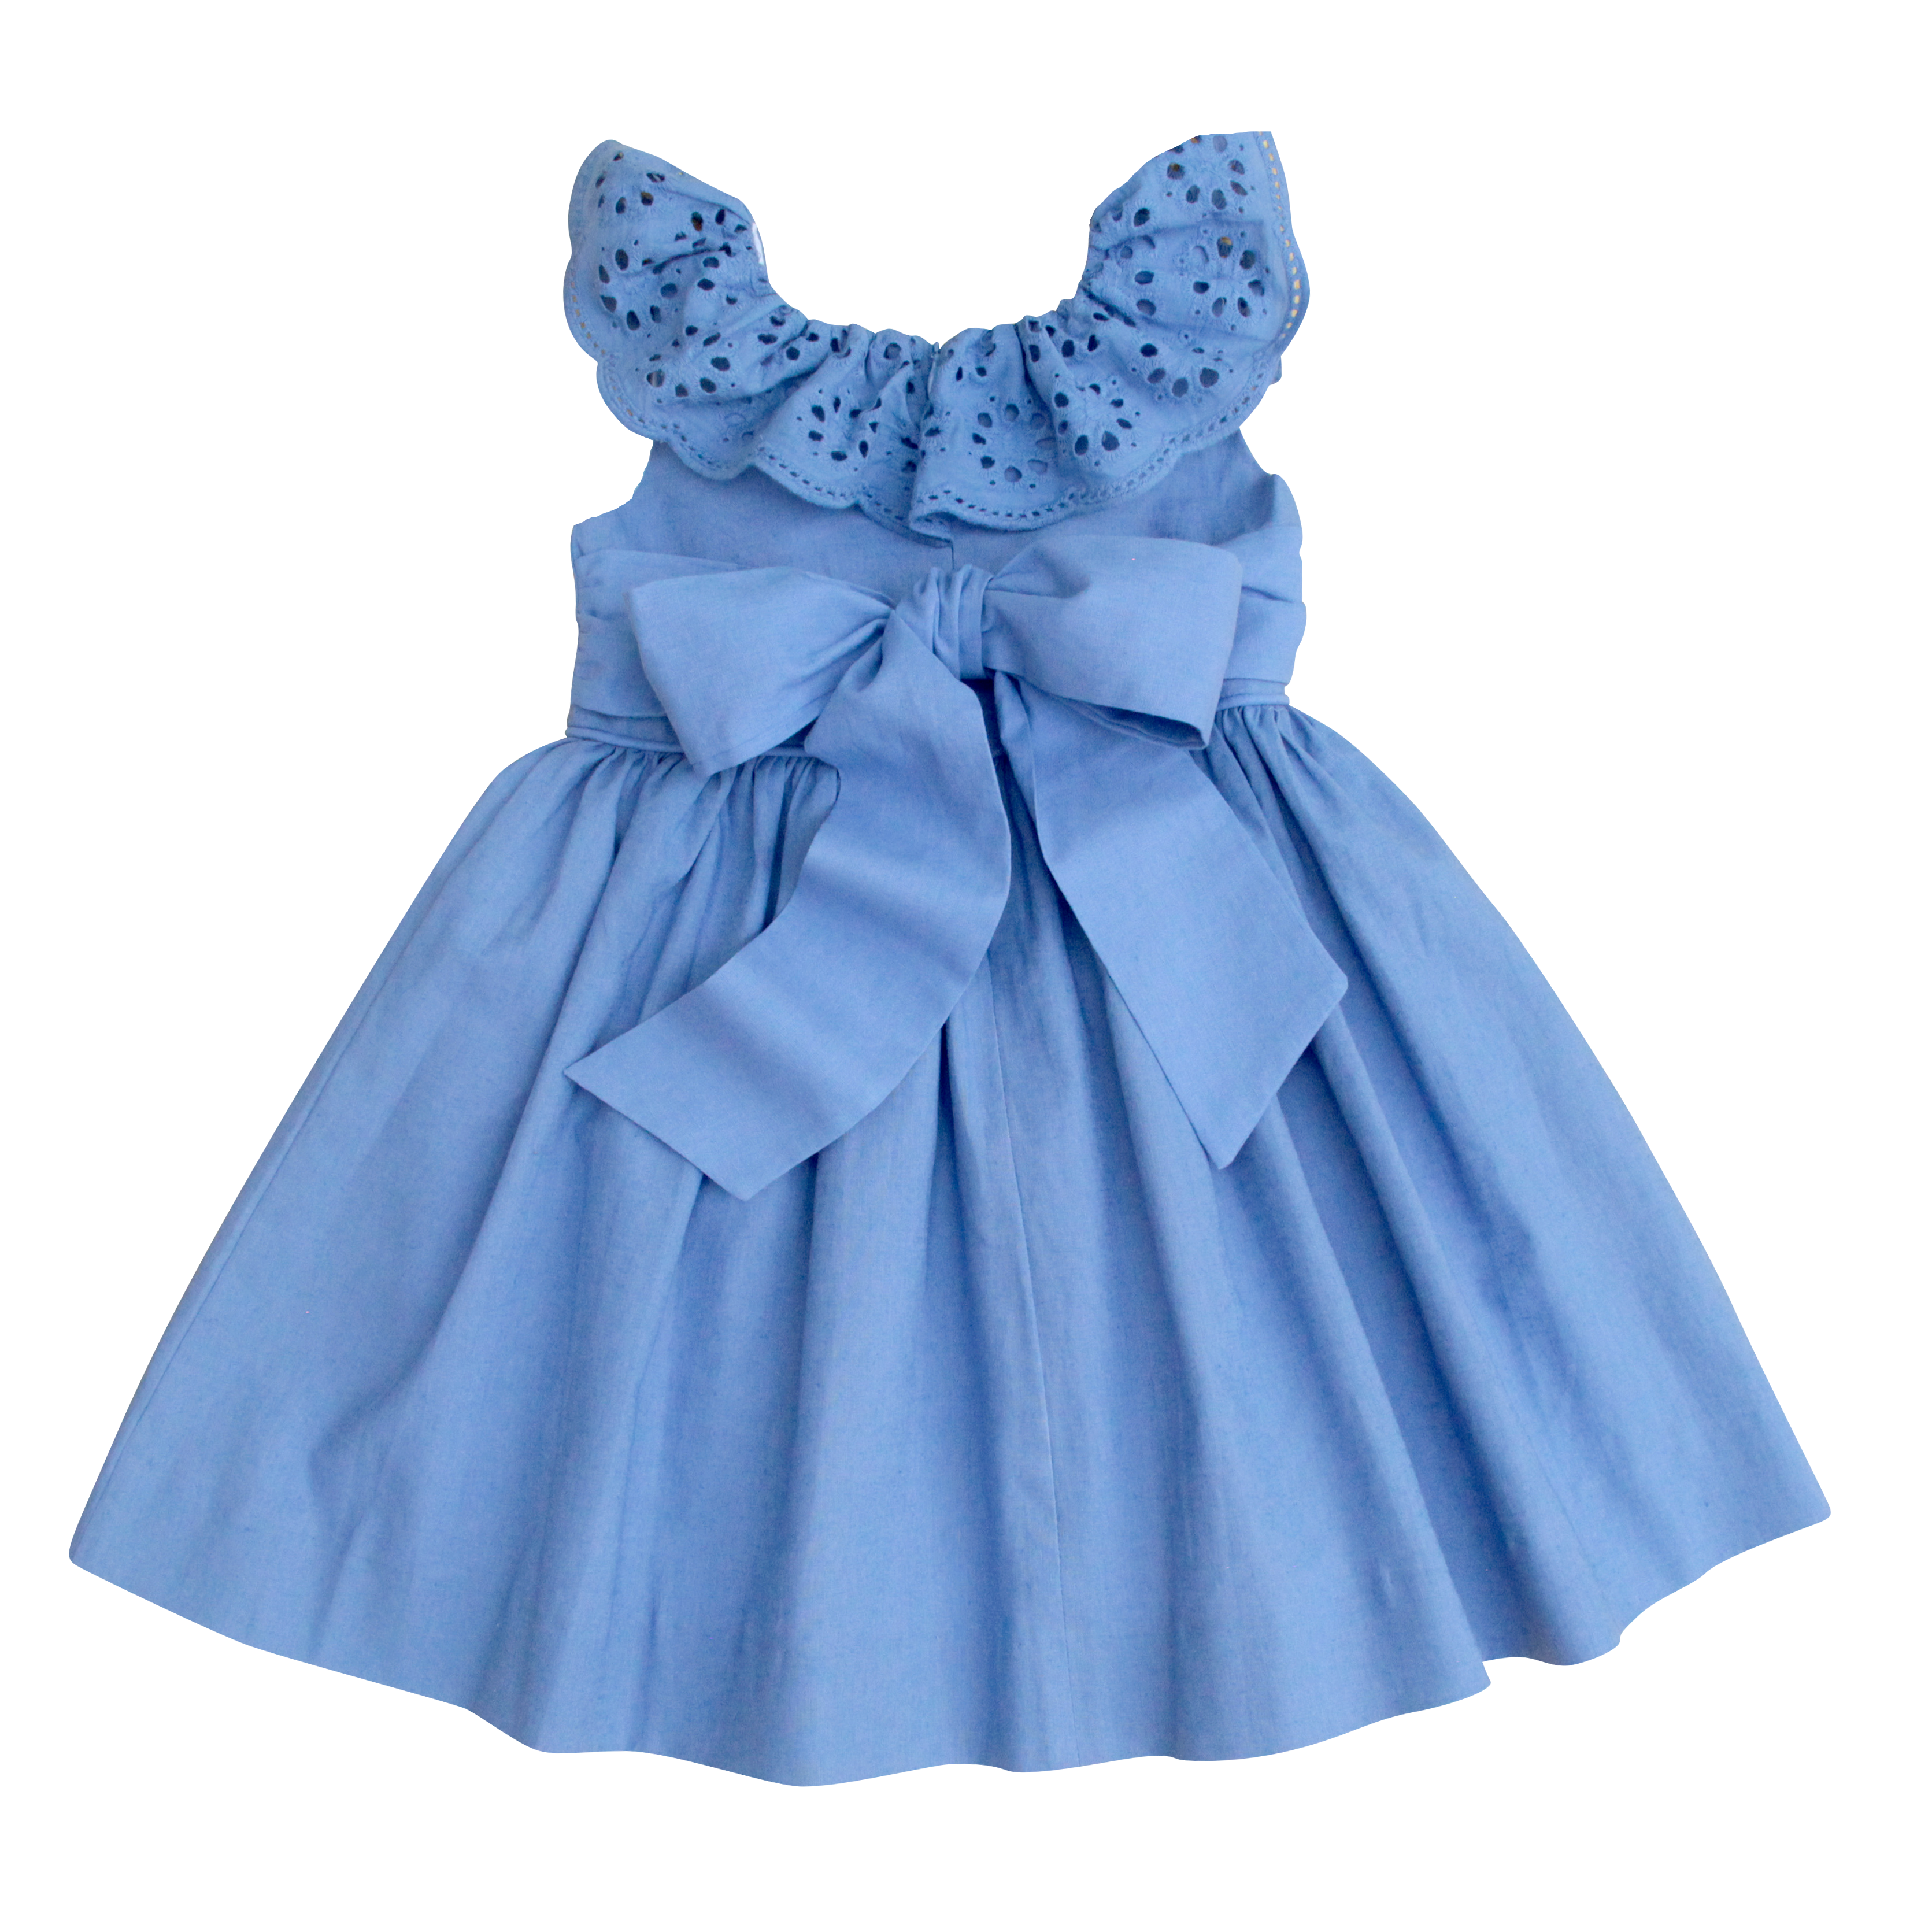 The Poppy Dress in Sky Blue